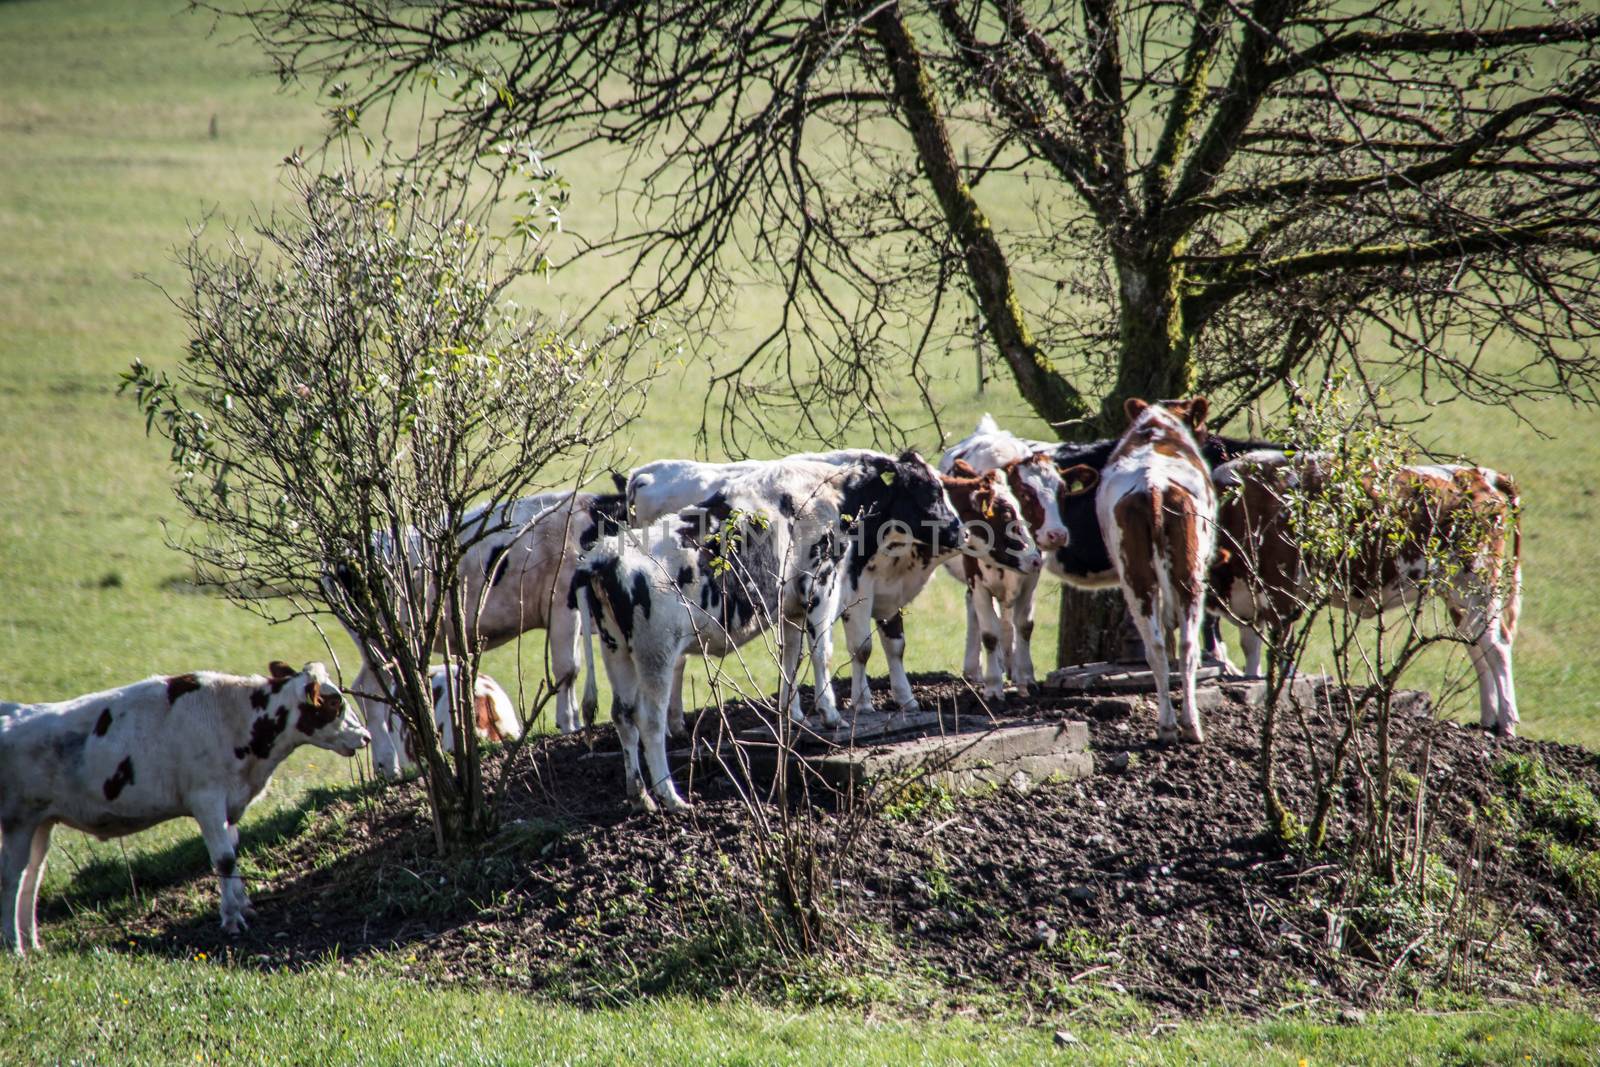 Cows seek shade under tree